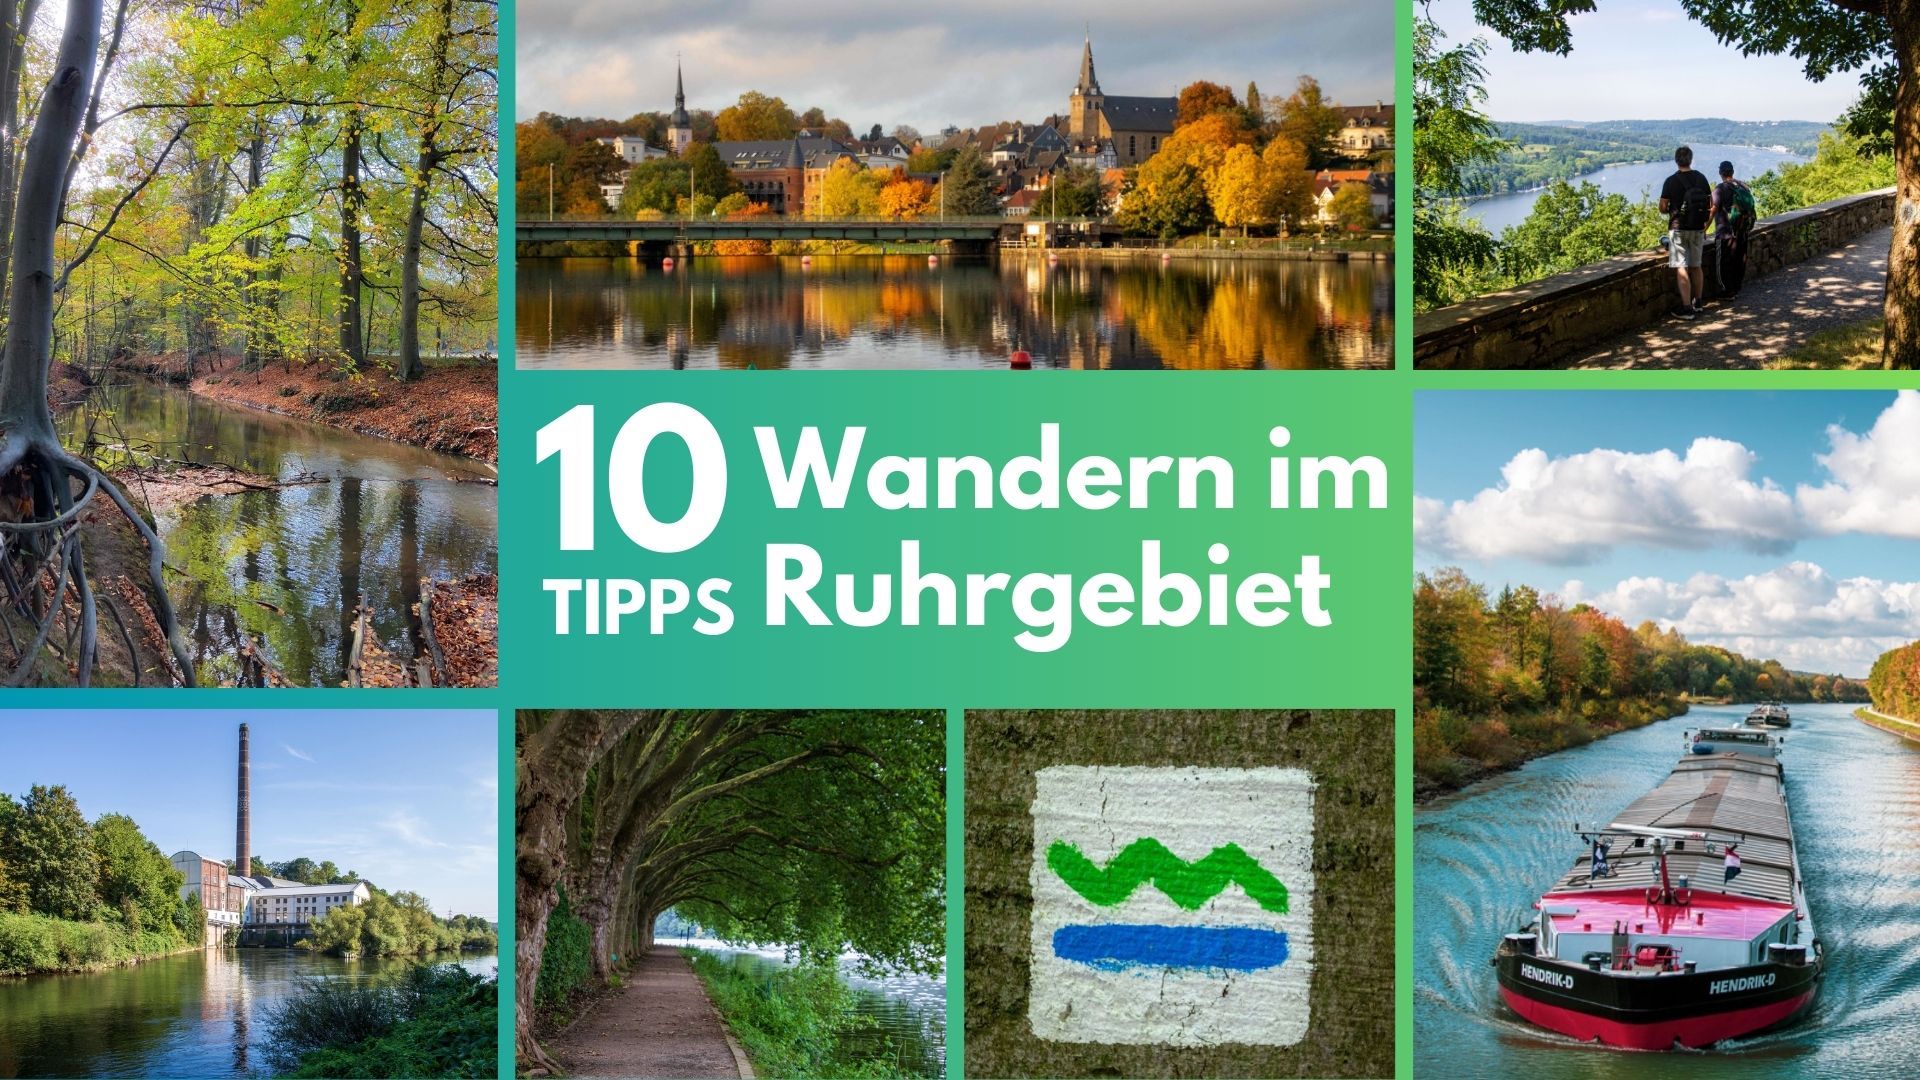 Wandern im Ruhrgebiet – 10 Tipps für erlebnisreiche Auszeiten  